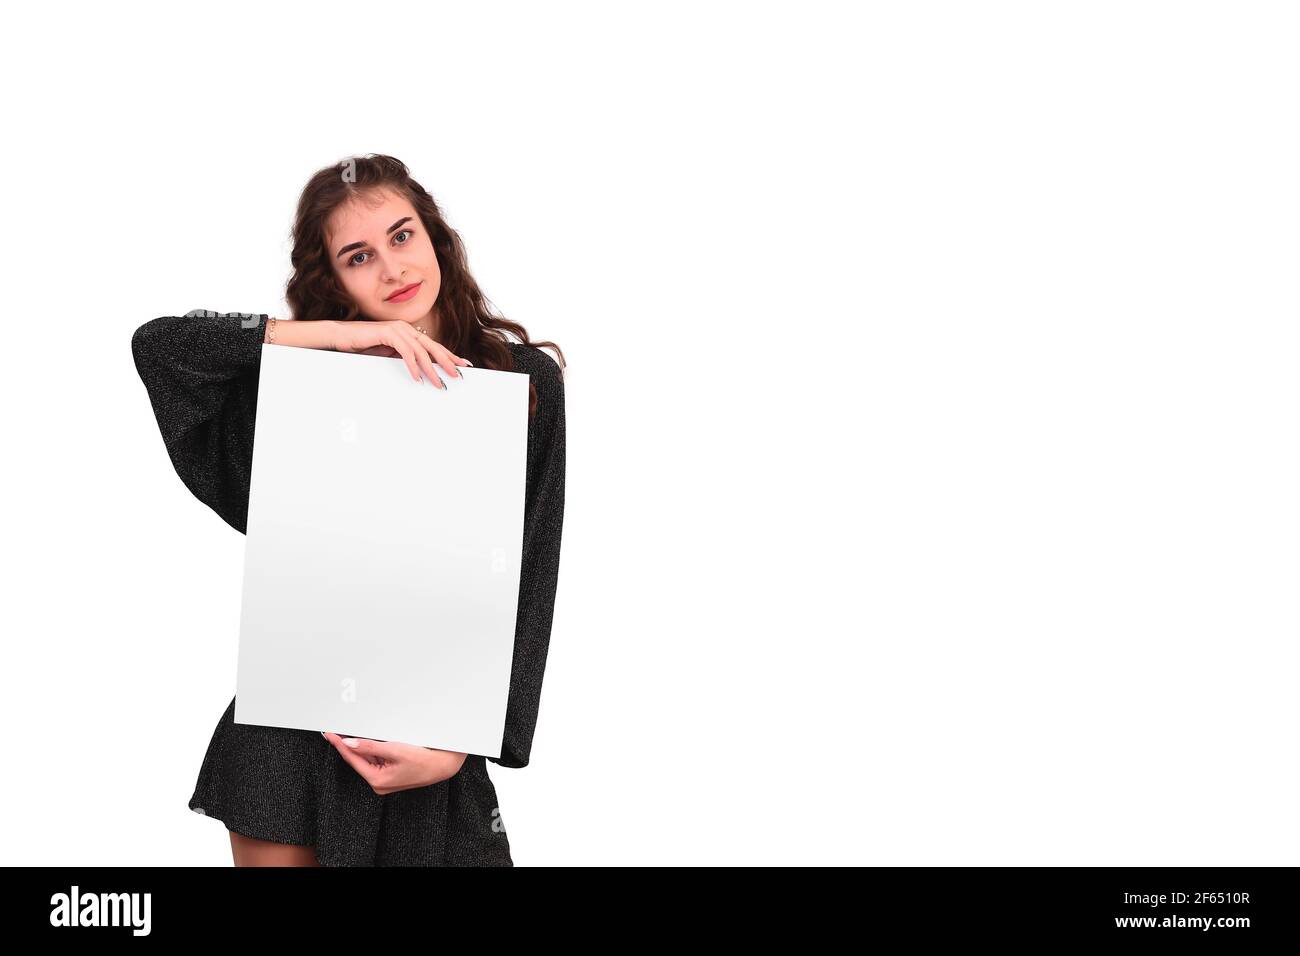 La donna mostra un foglio bianco vuoto grande di carta A3. Presentazione del foglio illustrativo spazio libero Foto Stock